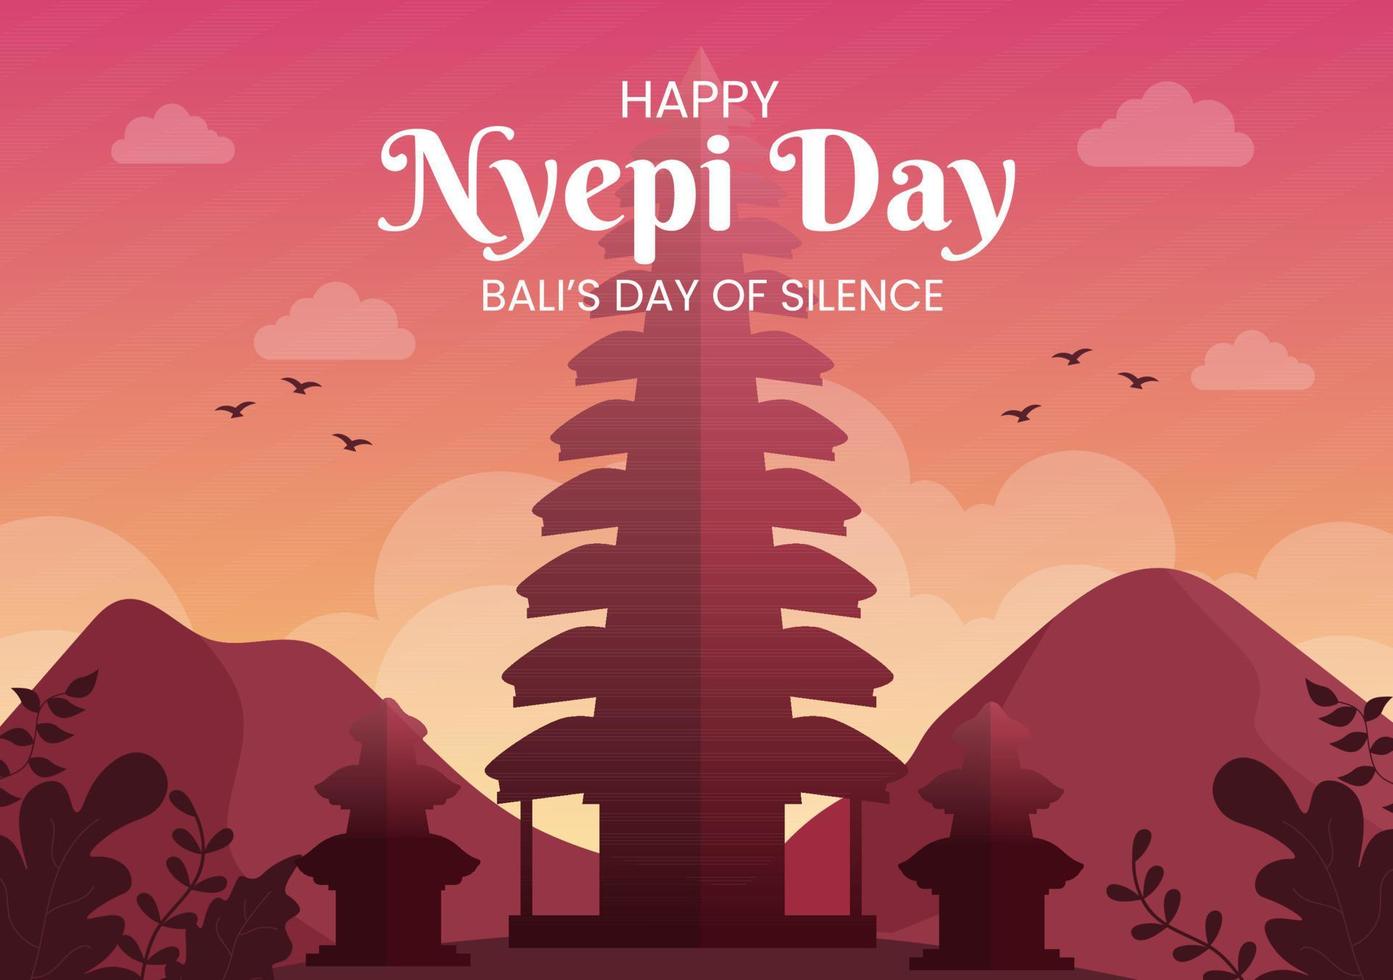 felice giorno di nyepi o silenzio di bali alle cerimonie indù sullo sfondo del tempio o illustrazione pura adatta per poster vettore